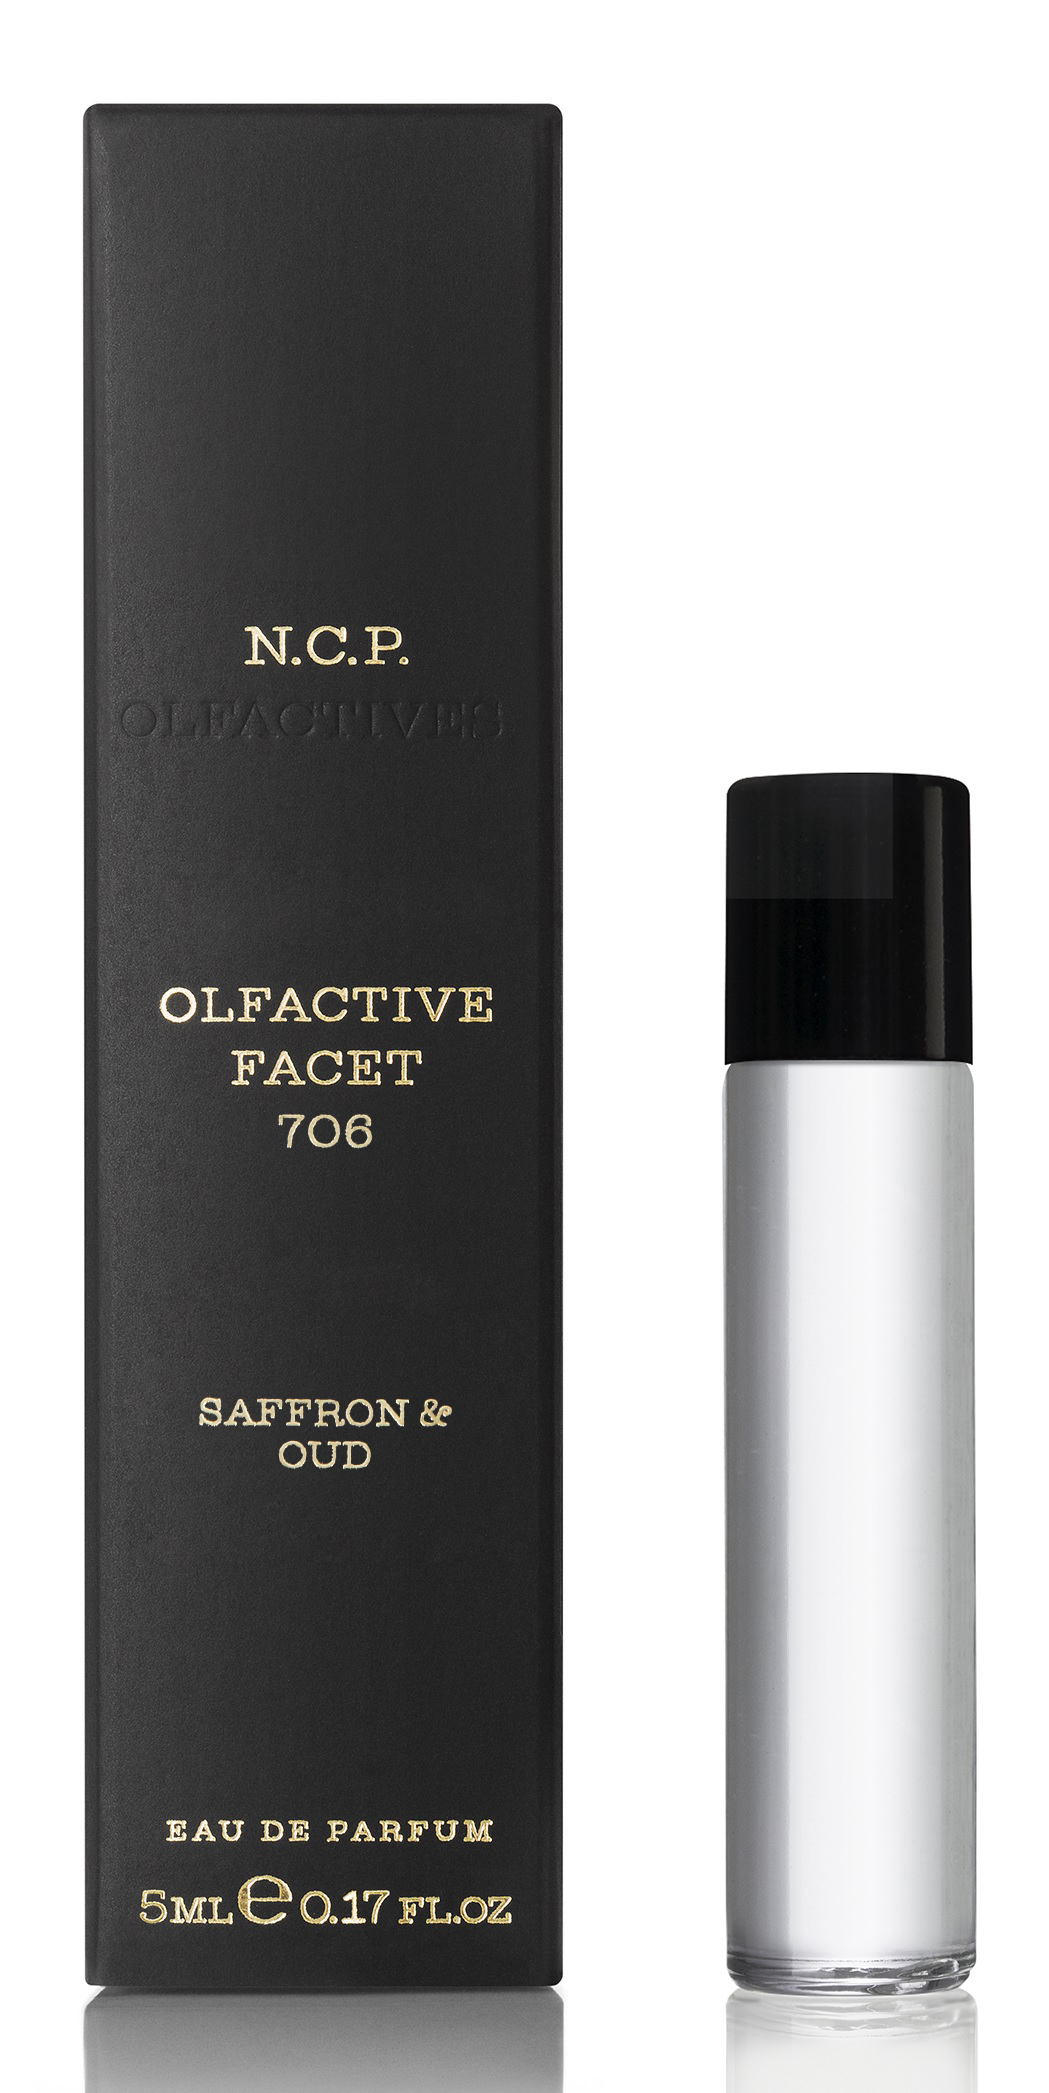 n.c.p. olfactive facet 706 - saffron & oud woda perfumowana 5 ml   